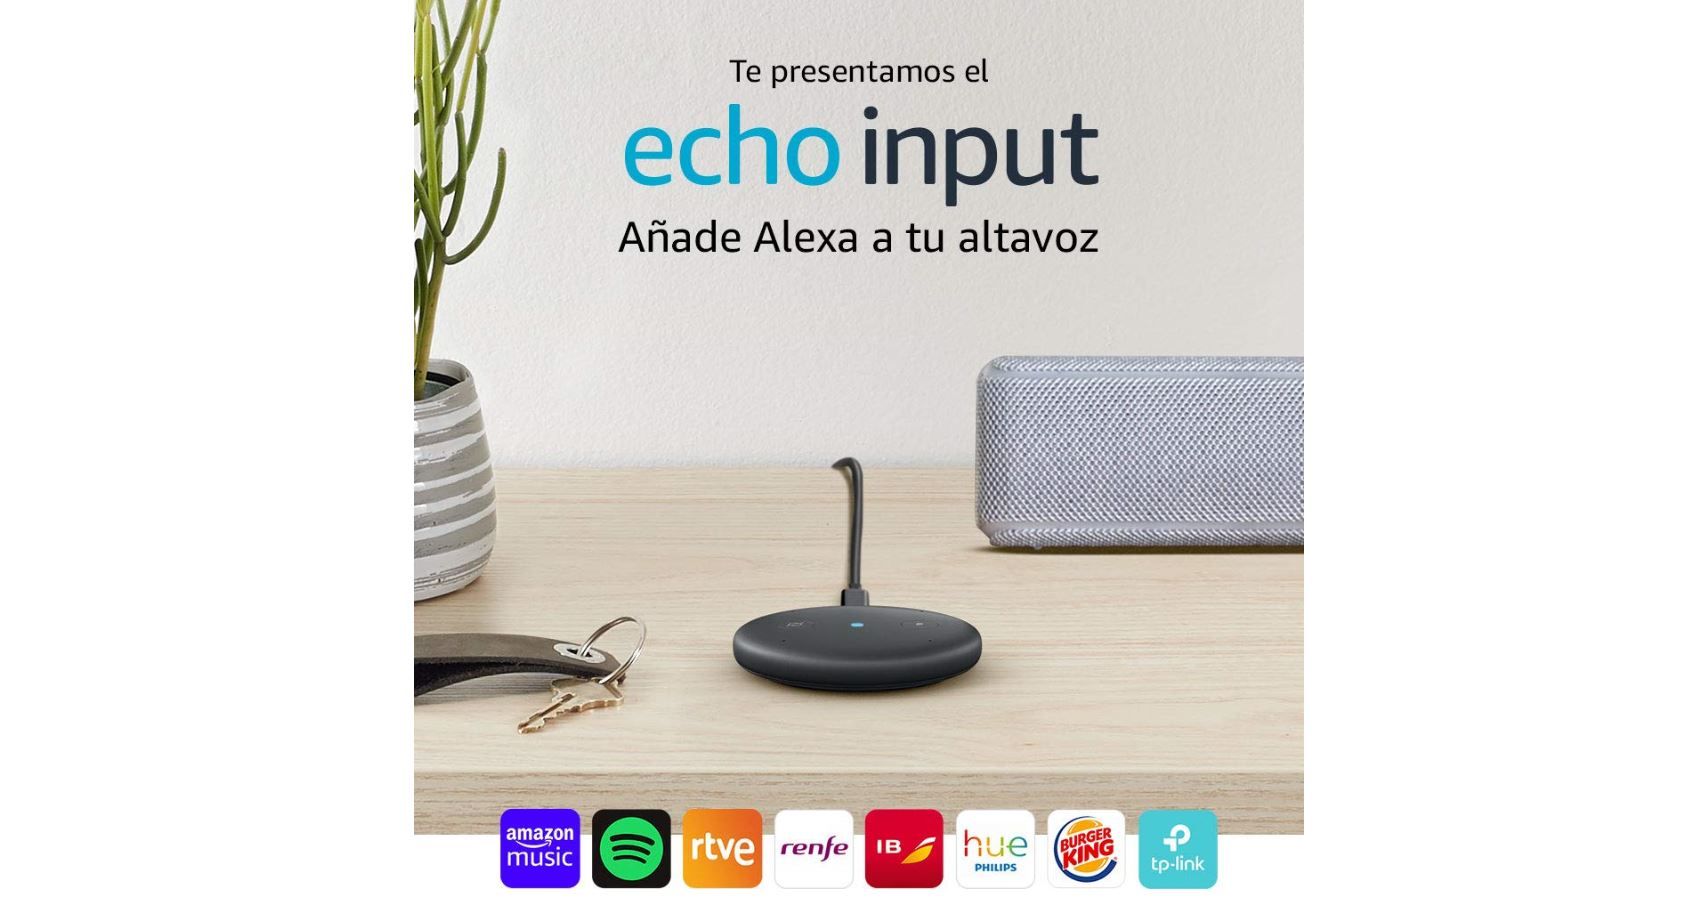 Convierte tu altavoz en un asistente de voz Alexa con Echo Input